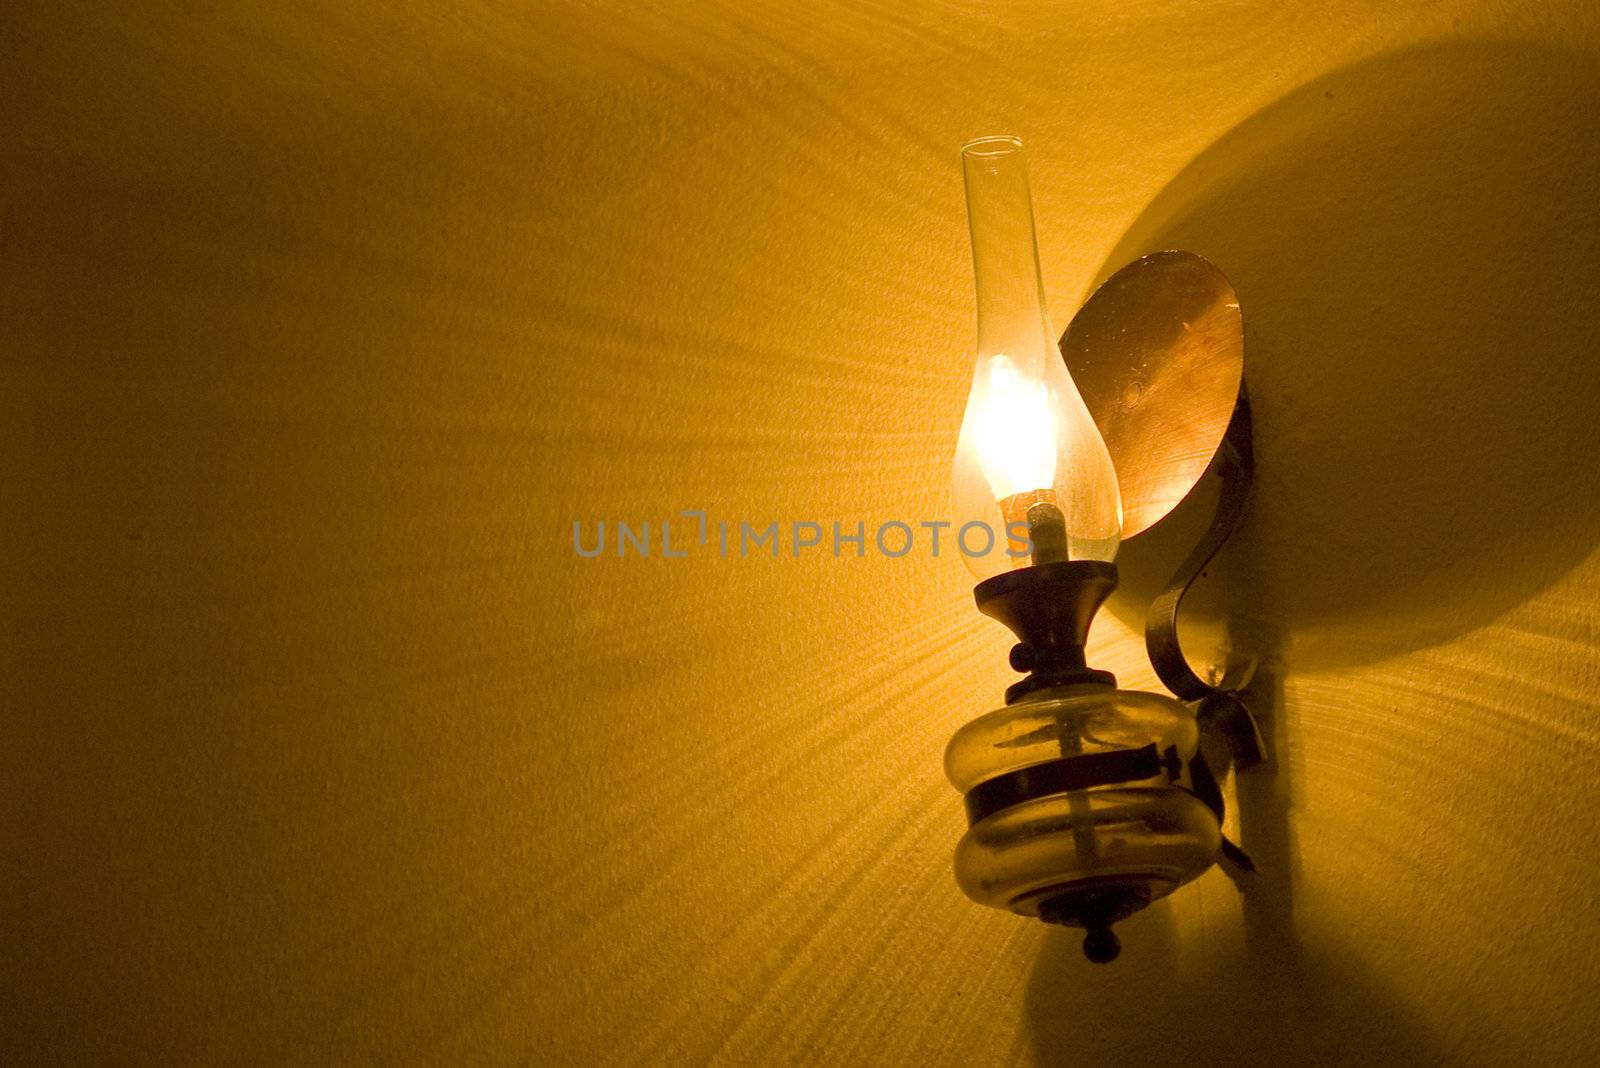 Retro Lamp by photo4dreams